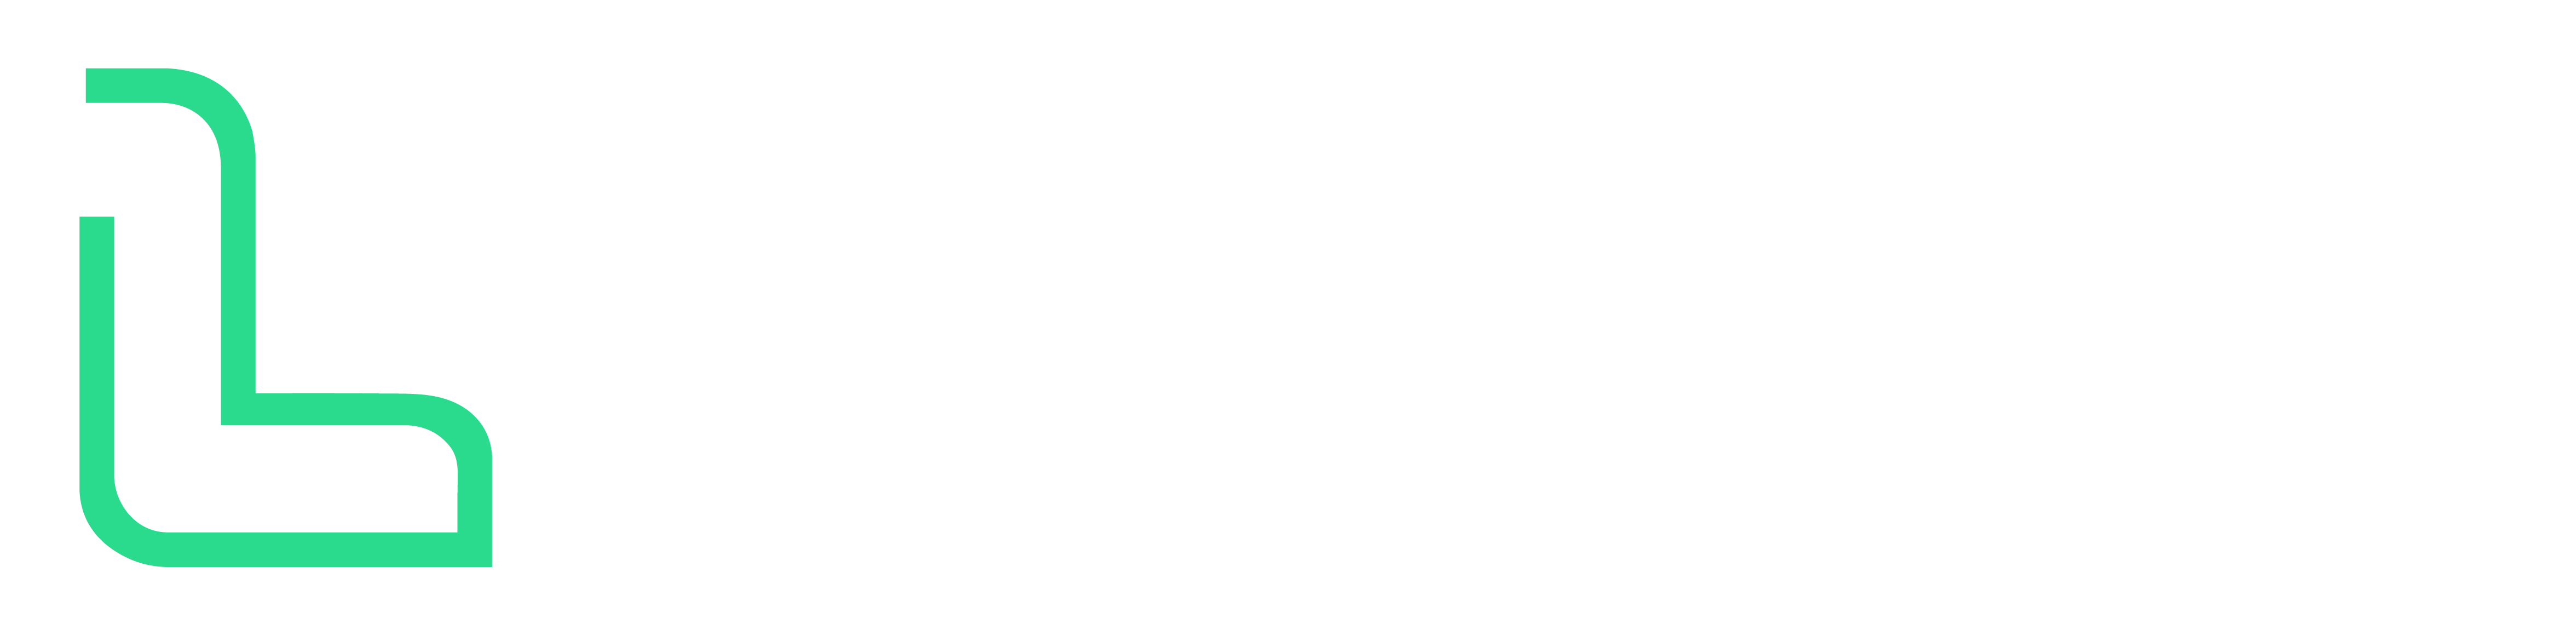 Luxowatt Logo